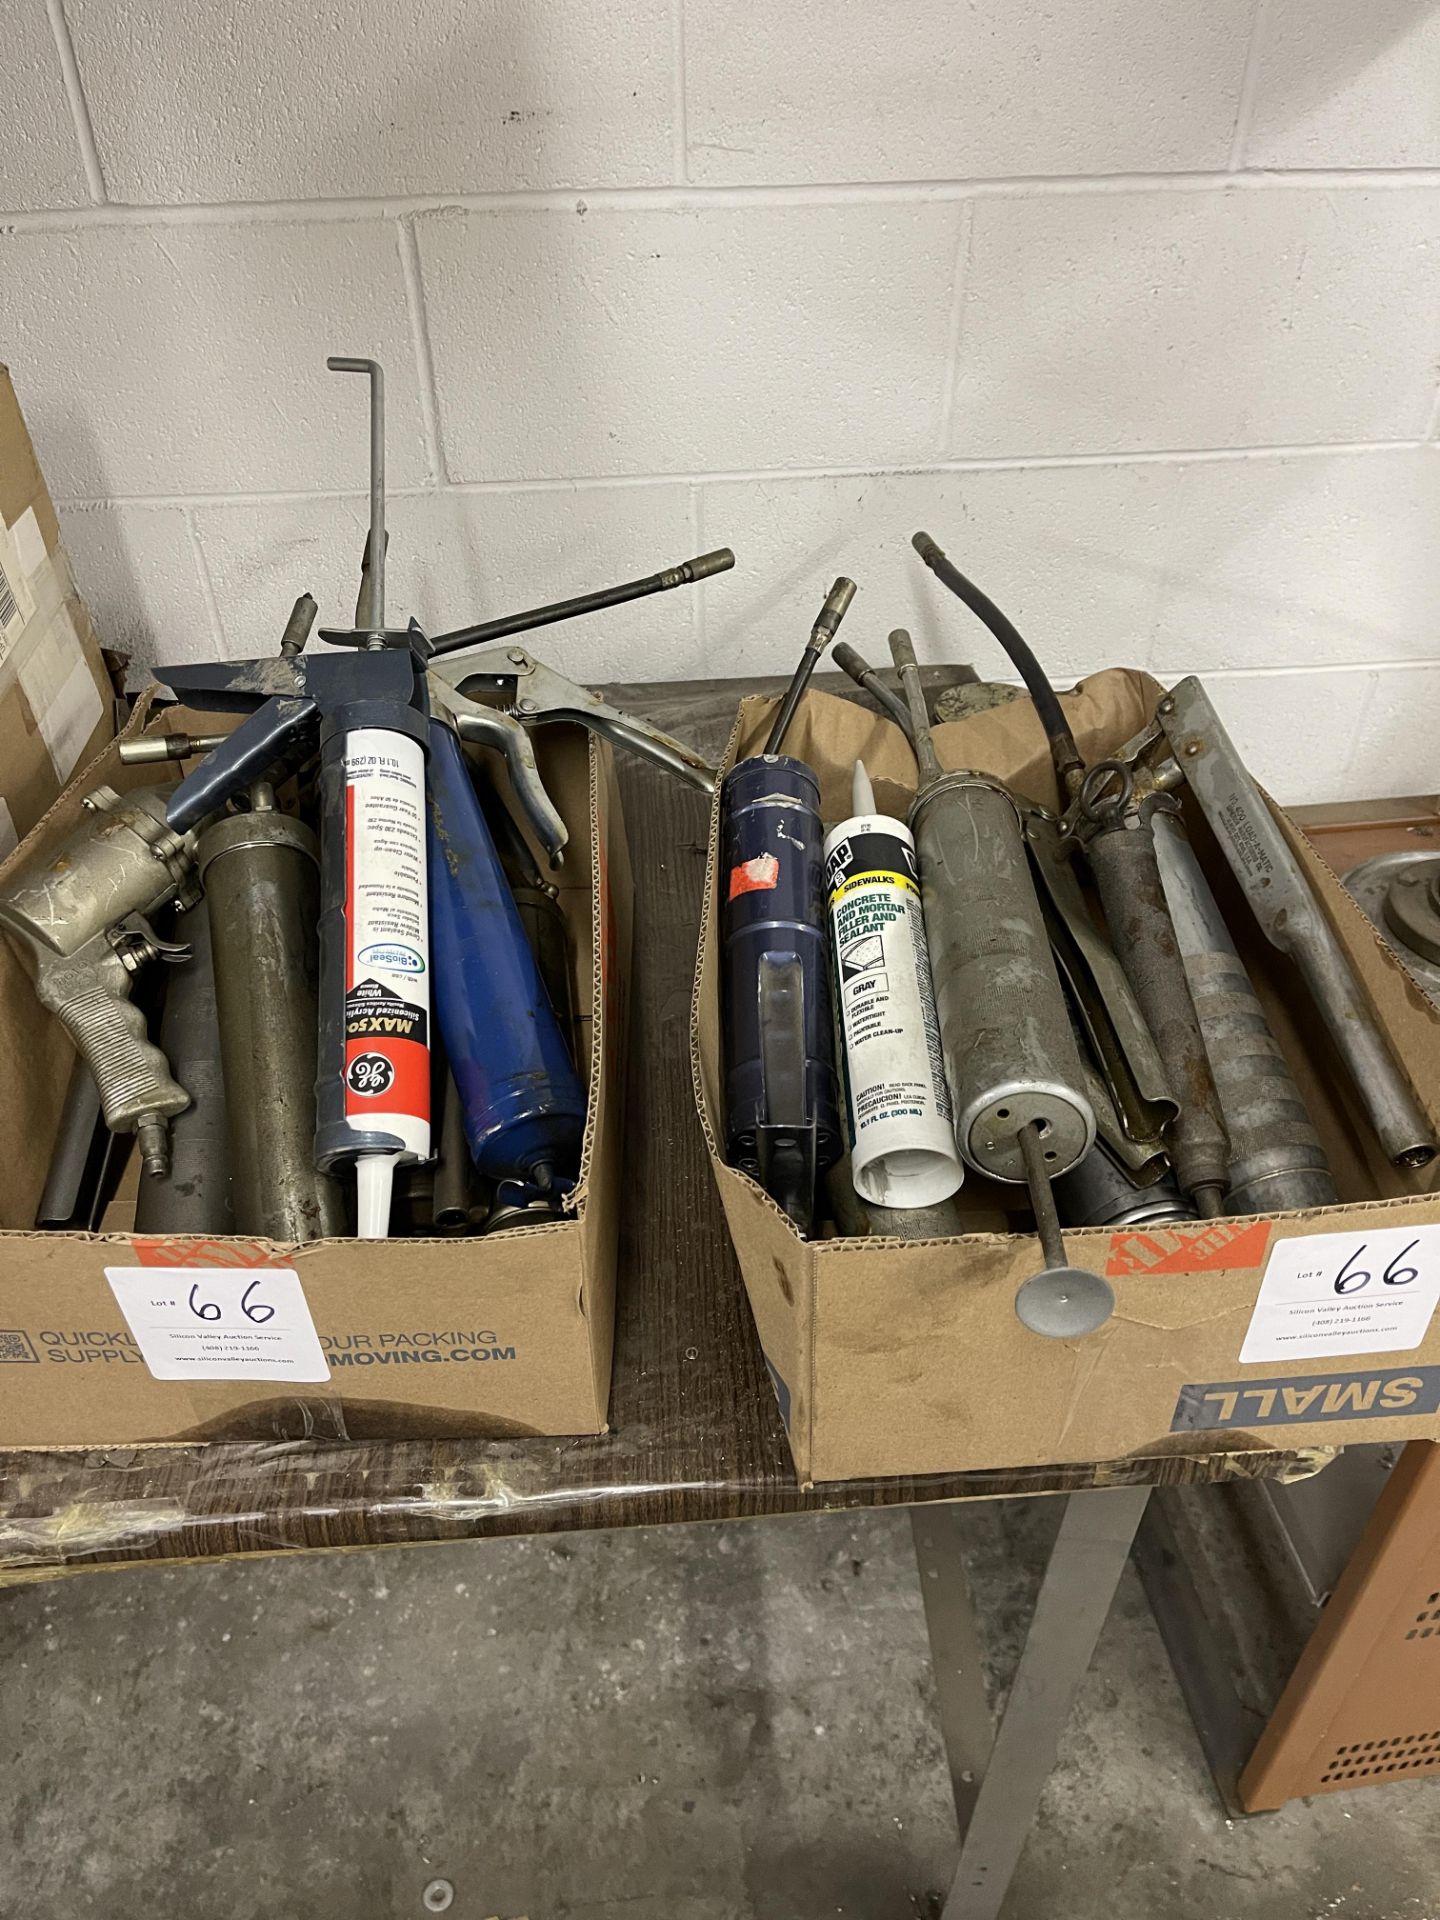 Two boxes of grease guns and caulking guns